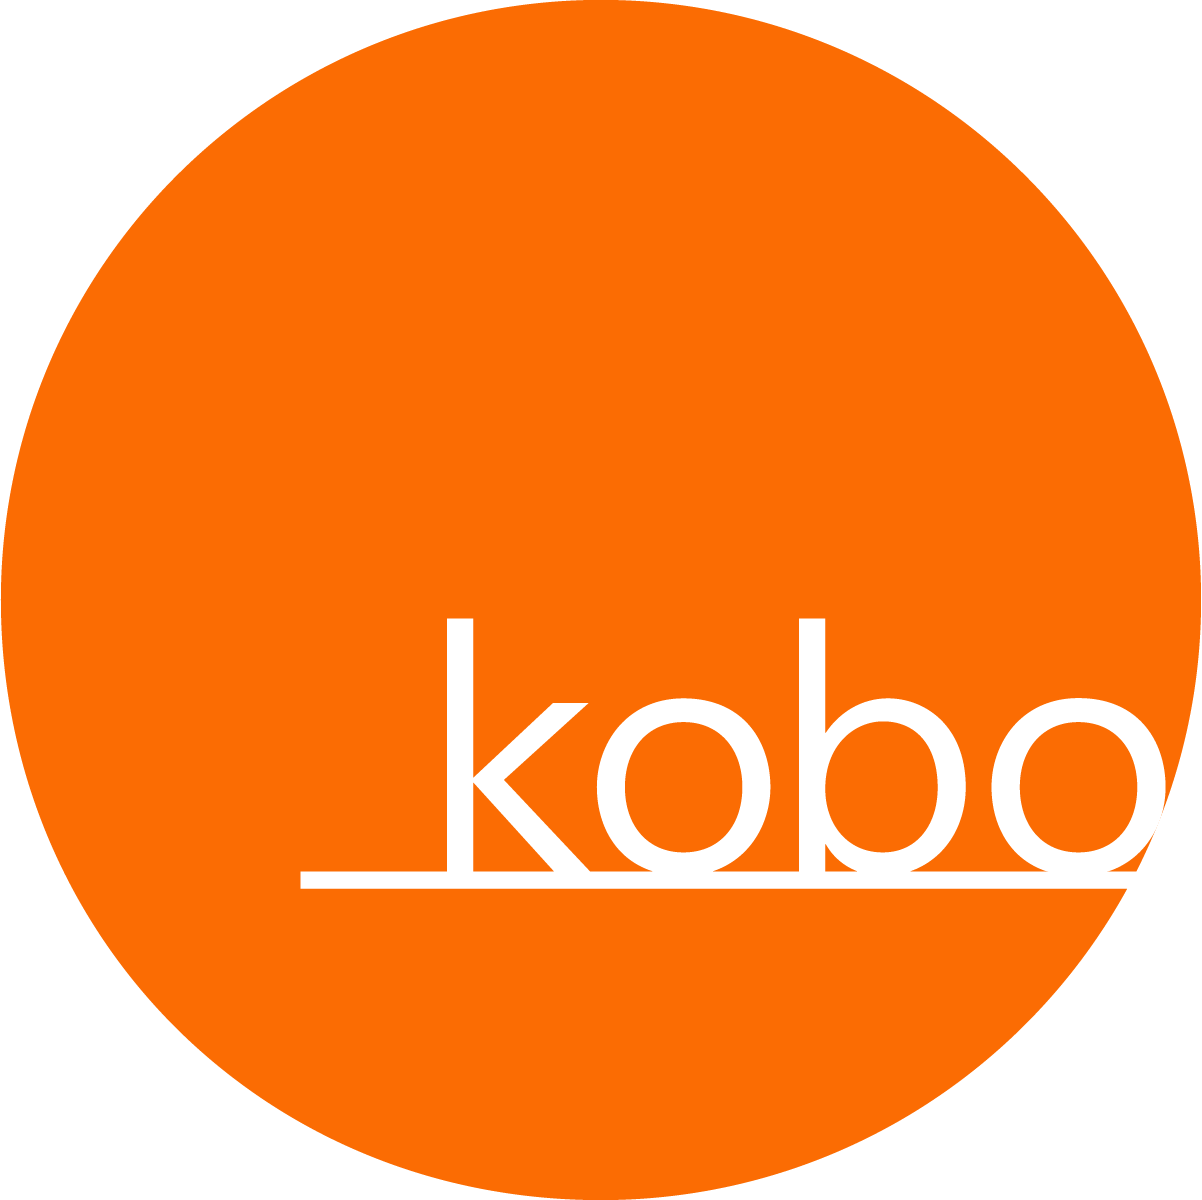 Kobo Gallery - Art Gallery in Savannah, GA